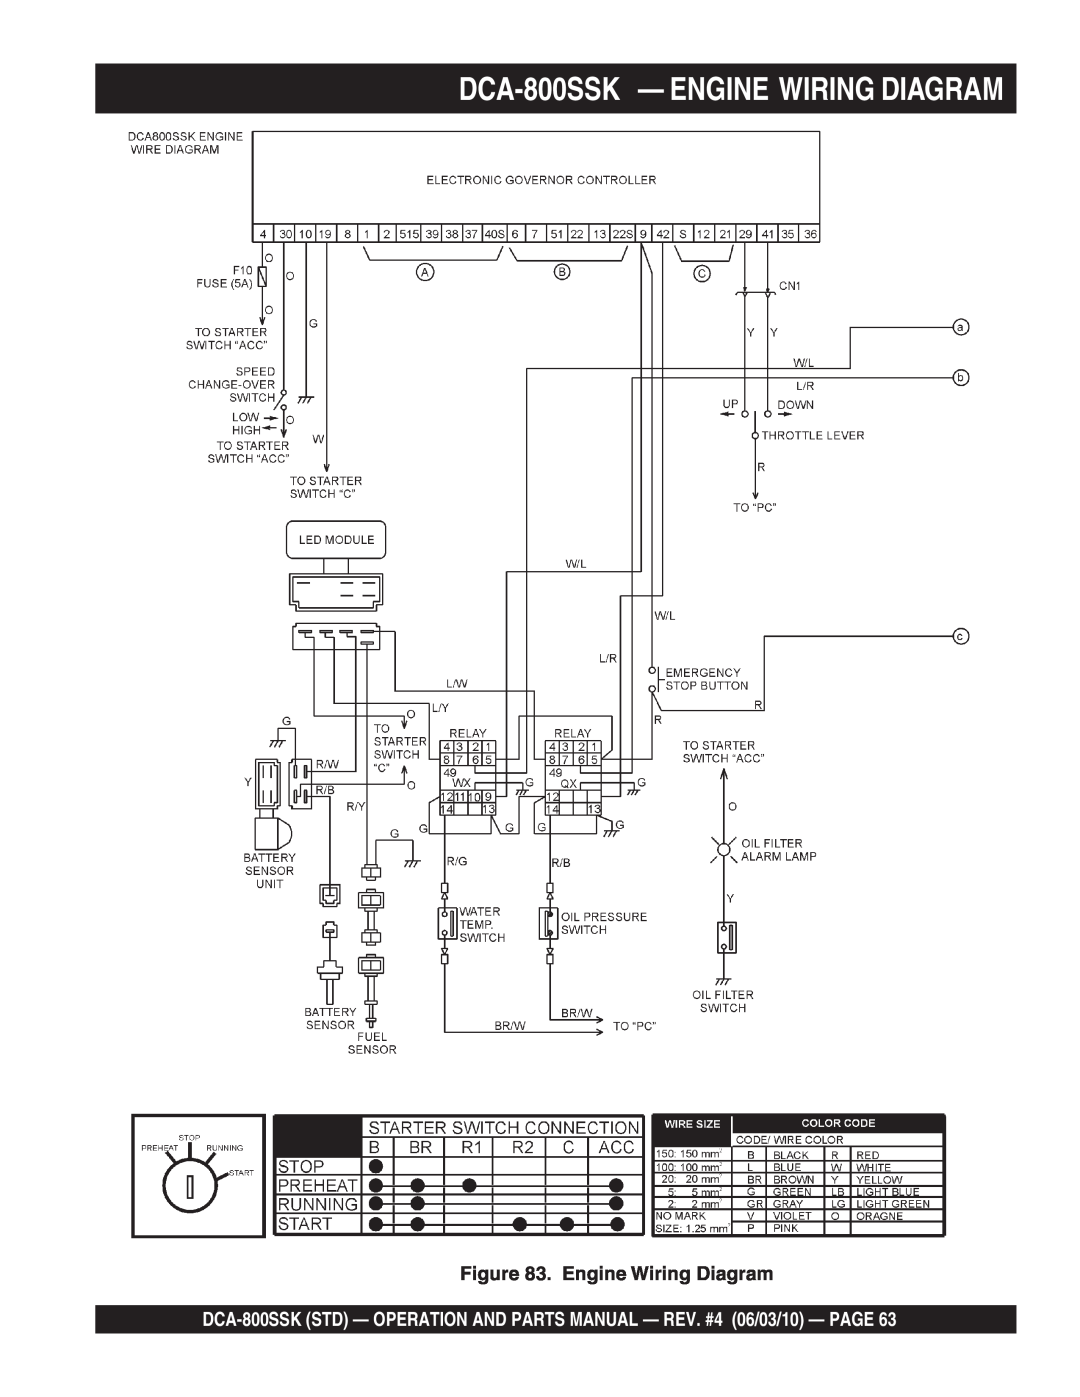 Multiquip operation manual DCA-800SSK - ENGINE WIRING DIAGRAM, Engine Wiring Diagram 